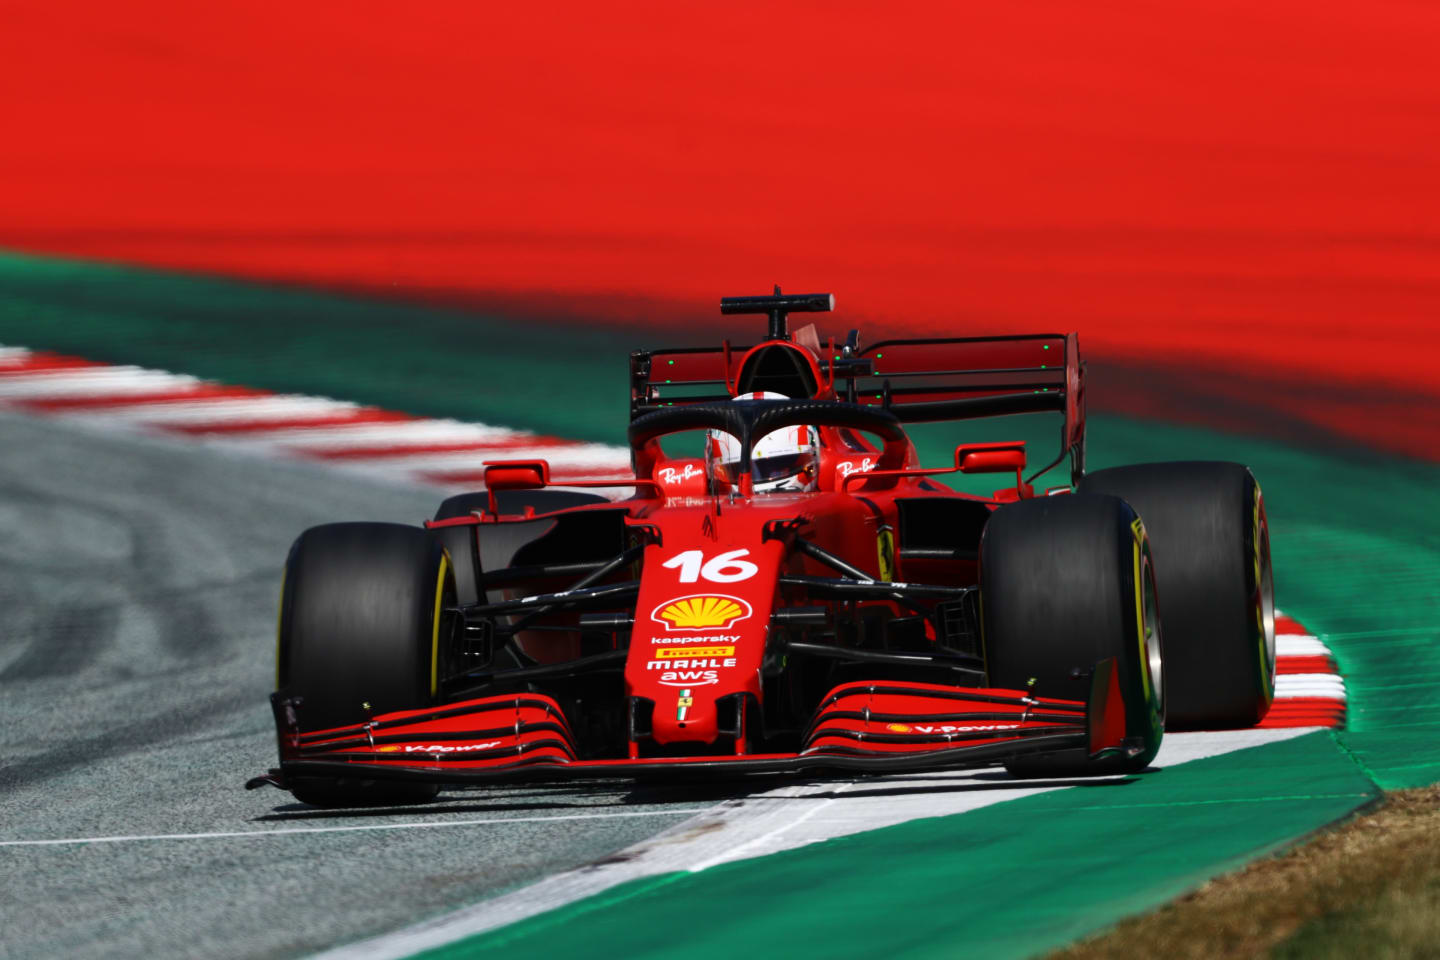 SPIELBERG, AUSTRIA - JULY 03: Charles Leclerc of Monaco driving the (16) Scuderia Ferrari SF21